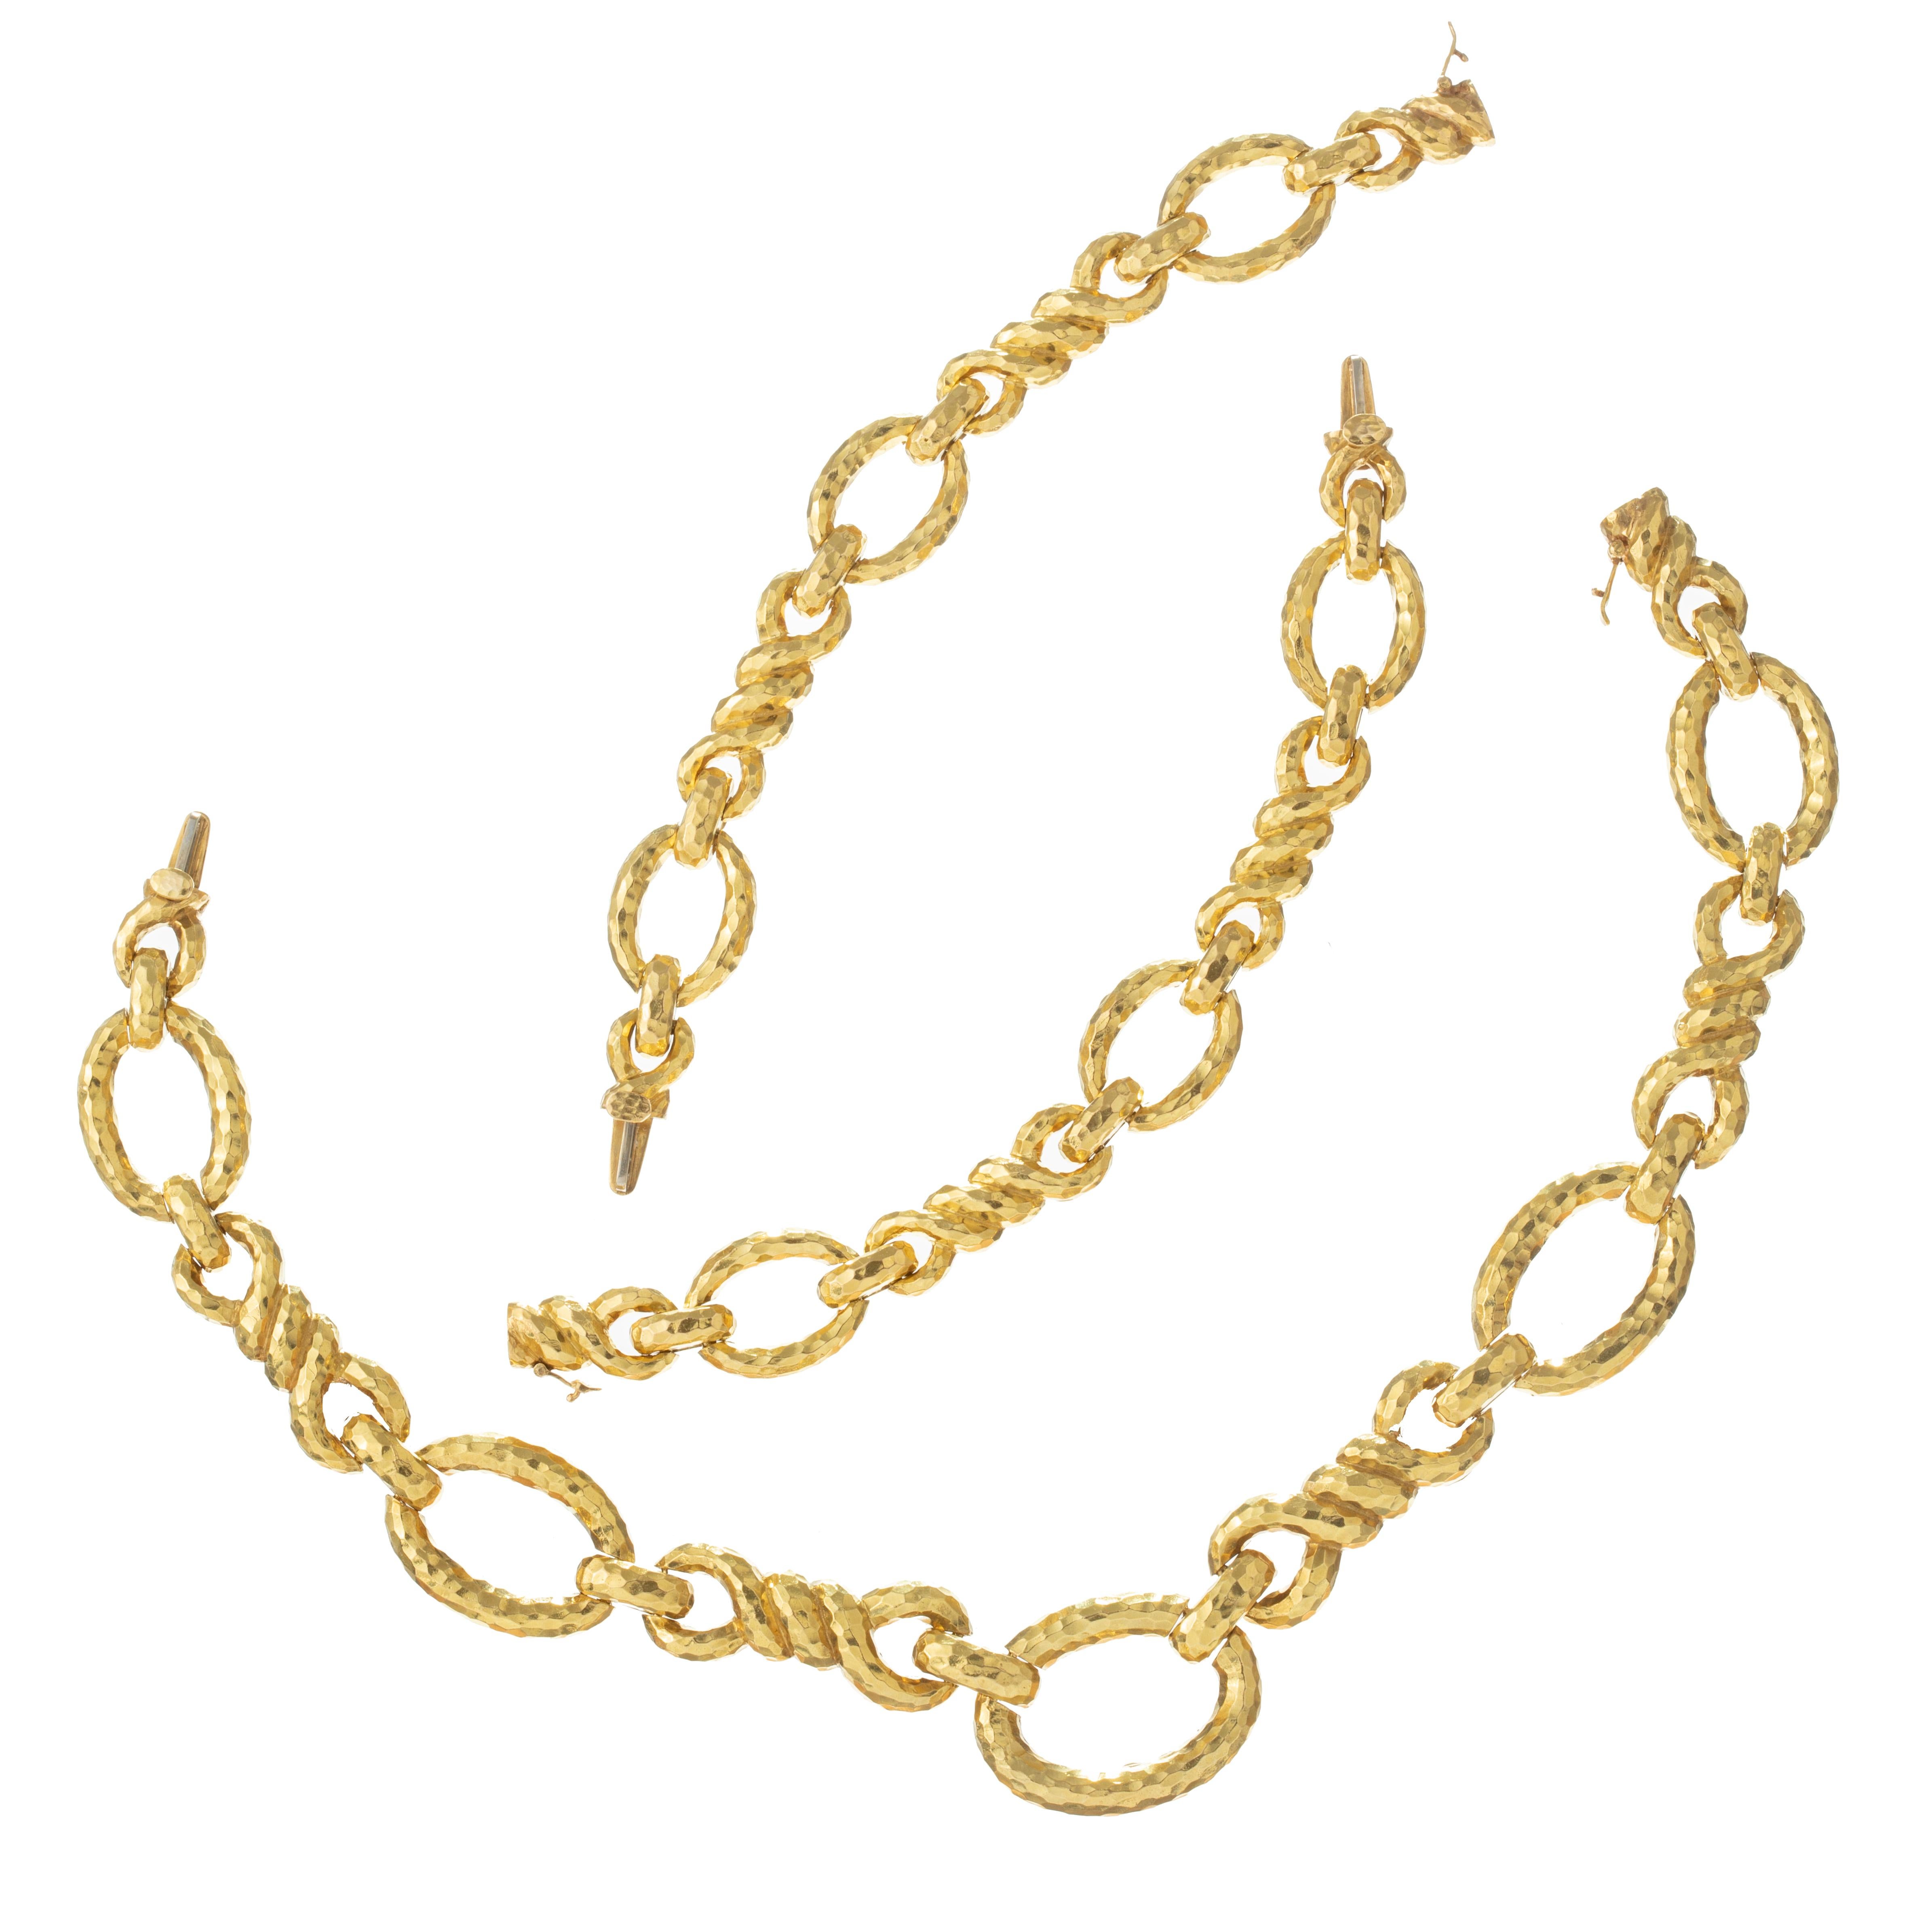 David Webb 1970er Jahre langes Gliedercollier aus gehämmertem 18k Gelbgold.  Die Halskette lässt sich mit zwei passenden Gliederarmbändern in eine Halskette umwandeln.  Halskette mit einer Gesamtlänge von 30